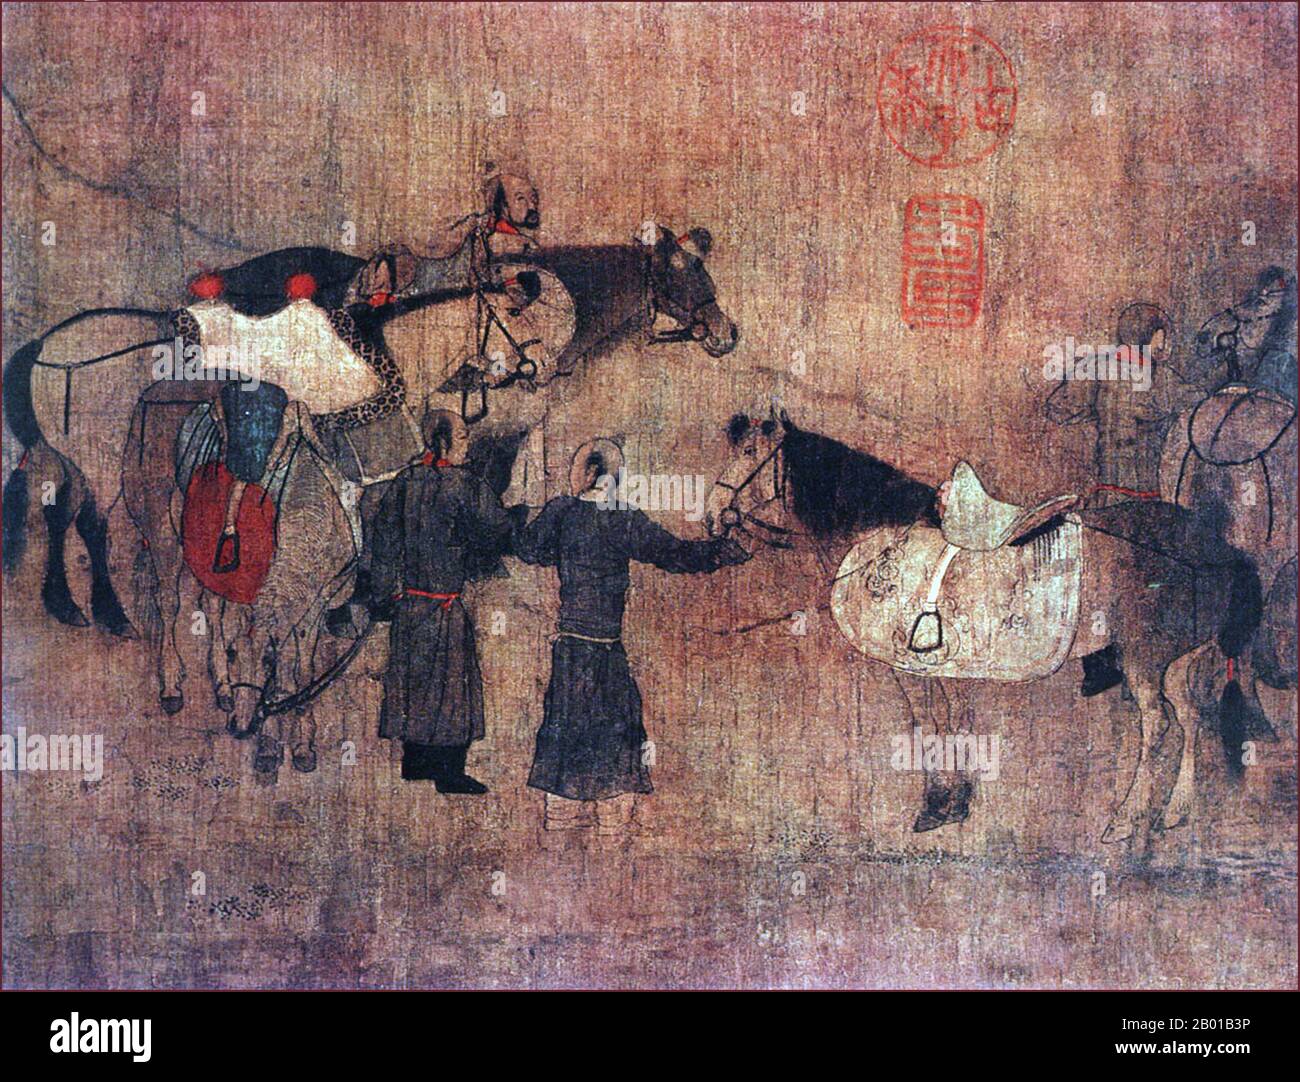 Cina: 'A Rest-Stop for the Khitan Khan' (pannello di sinistra). Particolare della pittura a corsolo di Hu Rang (fl. 10th ° secolo), cinque dinastie e dieci regni periodo, (907-960), 10th ° secolo. Il popolo Khitan (o Khitai, Kitan, o Kidan), era un popolo mongolico nomade, originariamente situato in Mongolia e Manciuria (la regione nord-orientale della Cina moderna) dal 4th ° secolo. Hanno dominato una vasta area nella Cina settentrionale dal 10th ° secolo sotto la dinastia Liao, ma hanno lasciato poche reliquie che sono sopravvissute fino ad oggi. Foto Stock